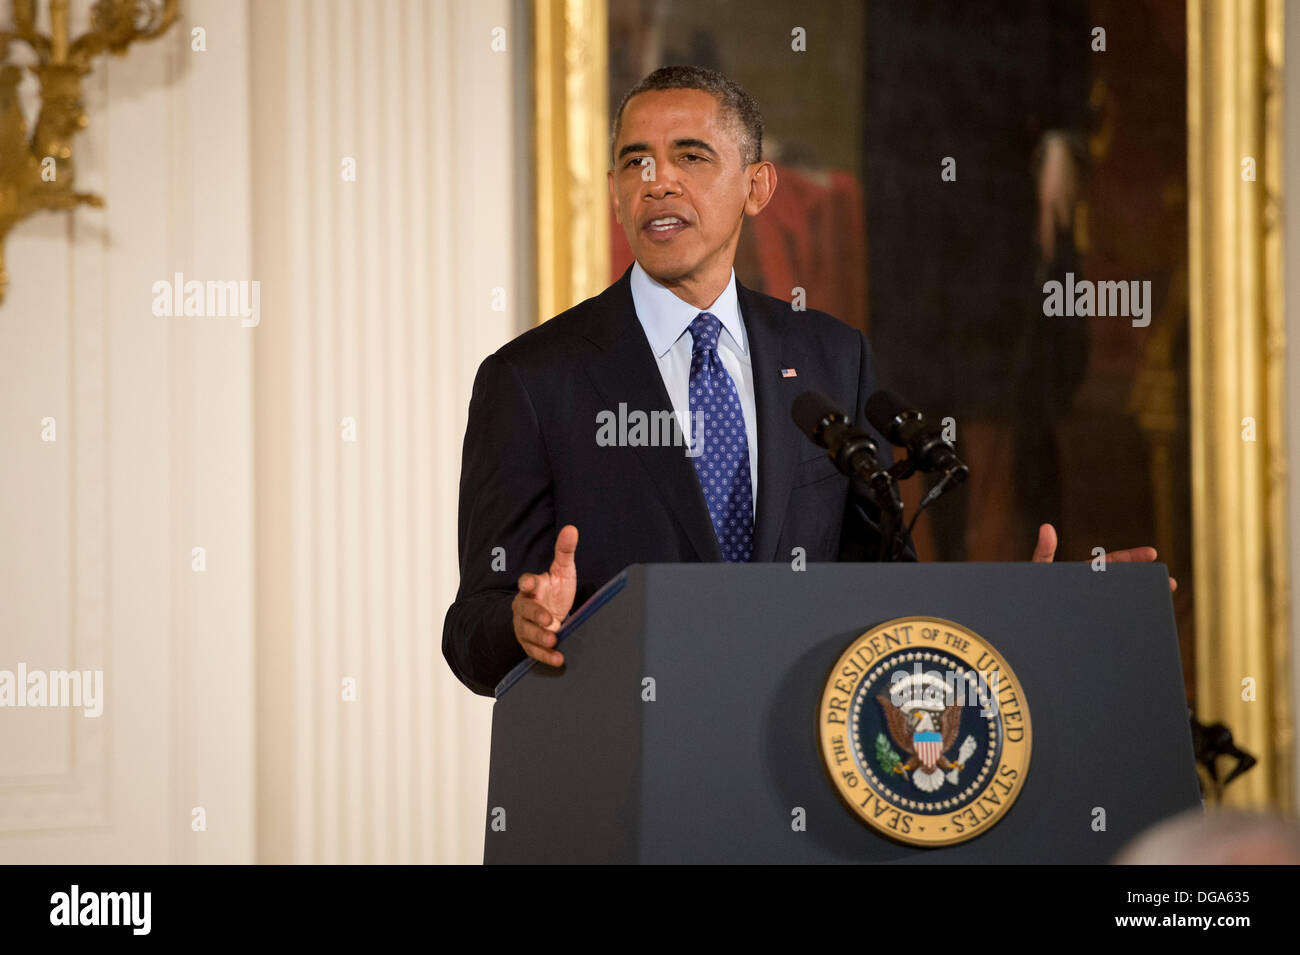 US-Präsident Barack Obama gibt Anmerkungen während der Medal Of Honor-Zeremonie für ehemalige US Army Captain William D. Swenson im East Room des weißen Hauses 15. Oktober 2013 in Washington, DC. Die Medal Of Honor ist die höchste militärische Auszeichnung des Landes. Stockfoto